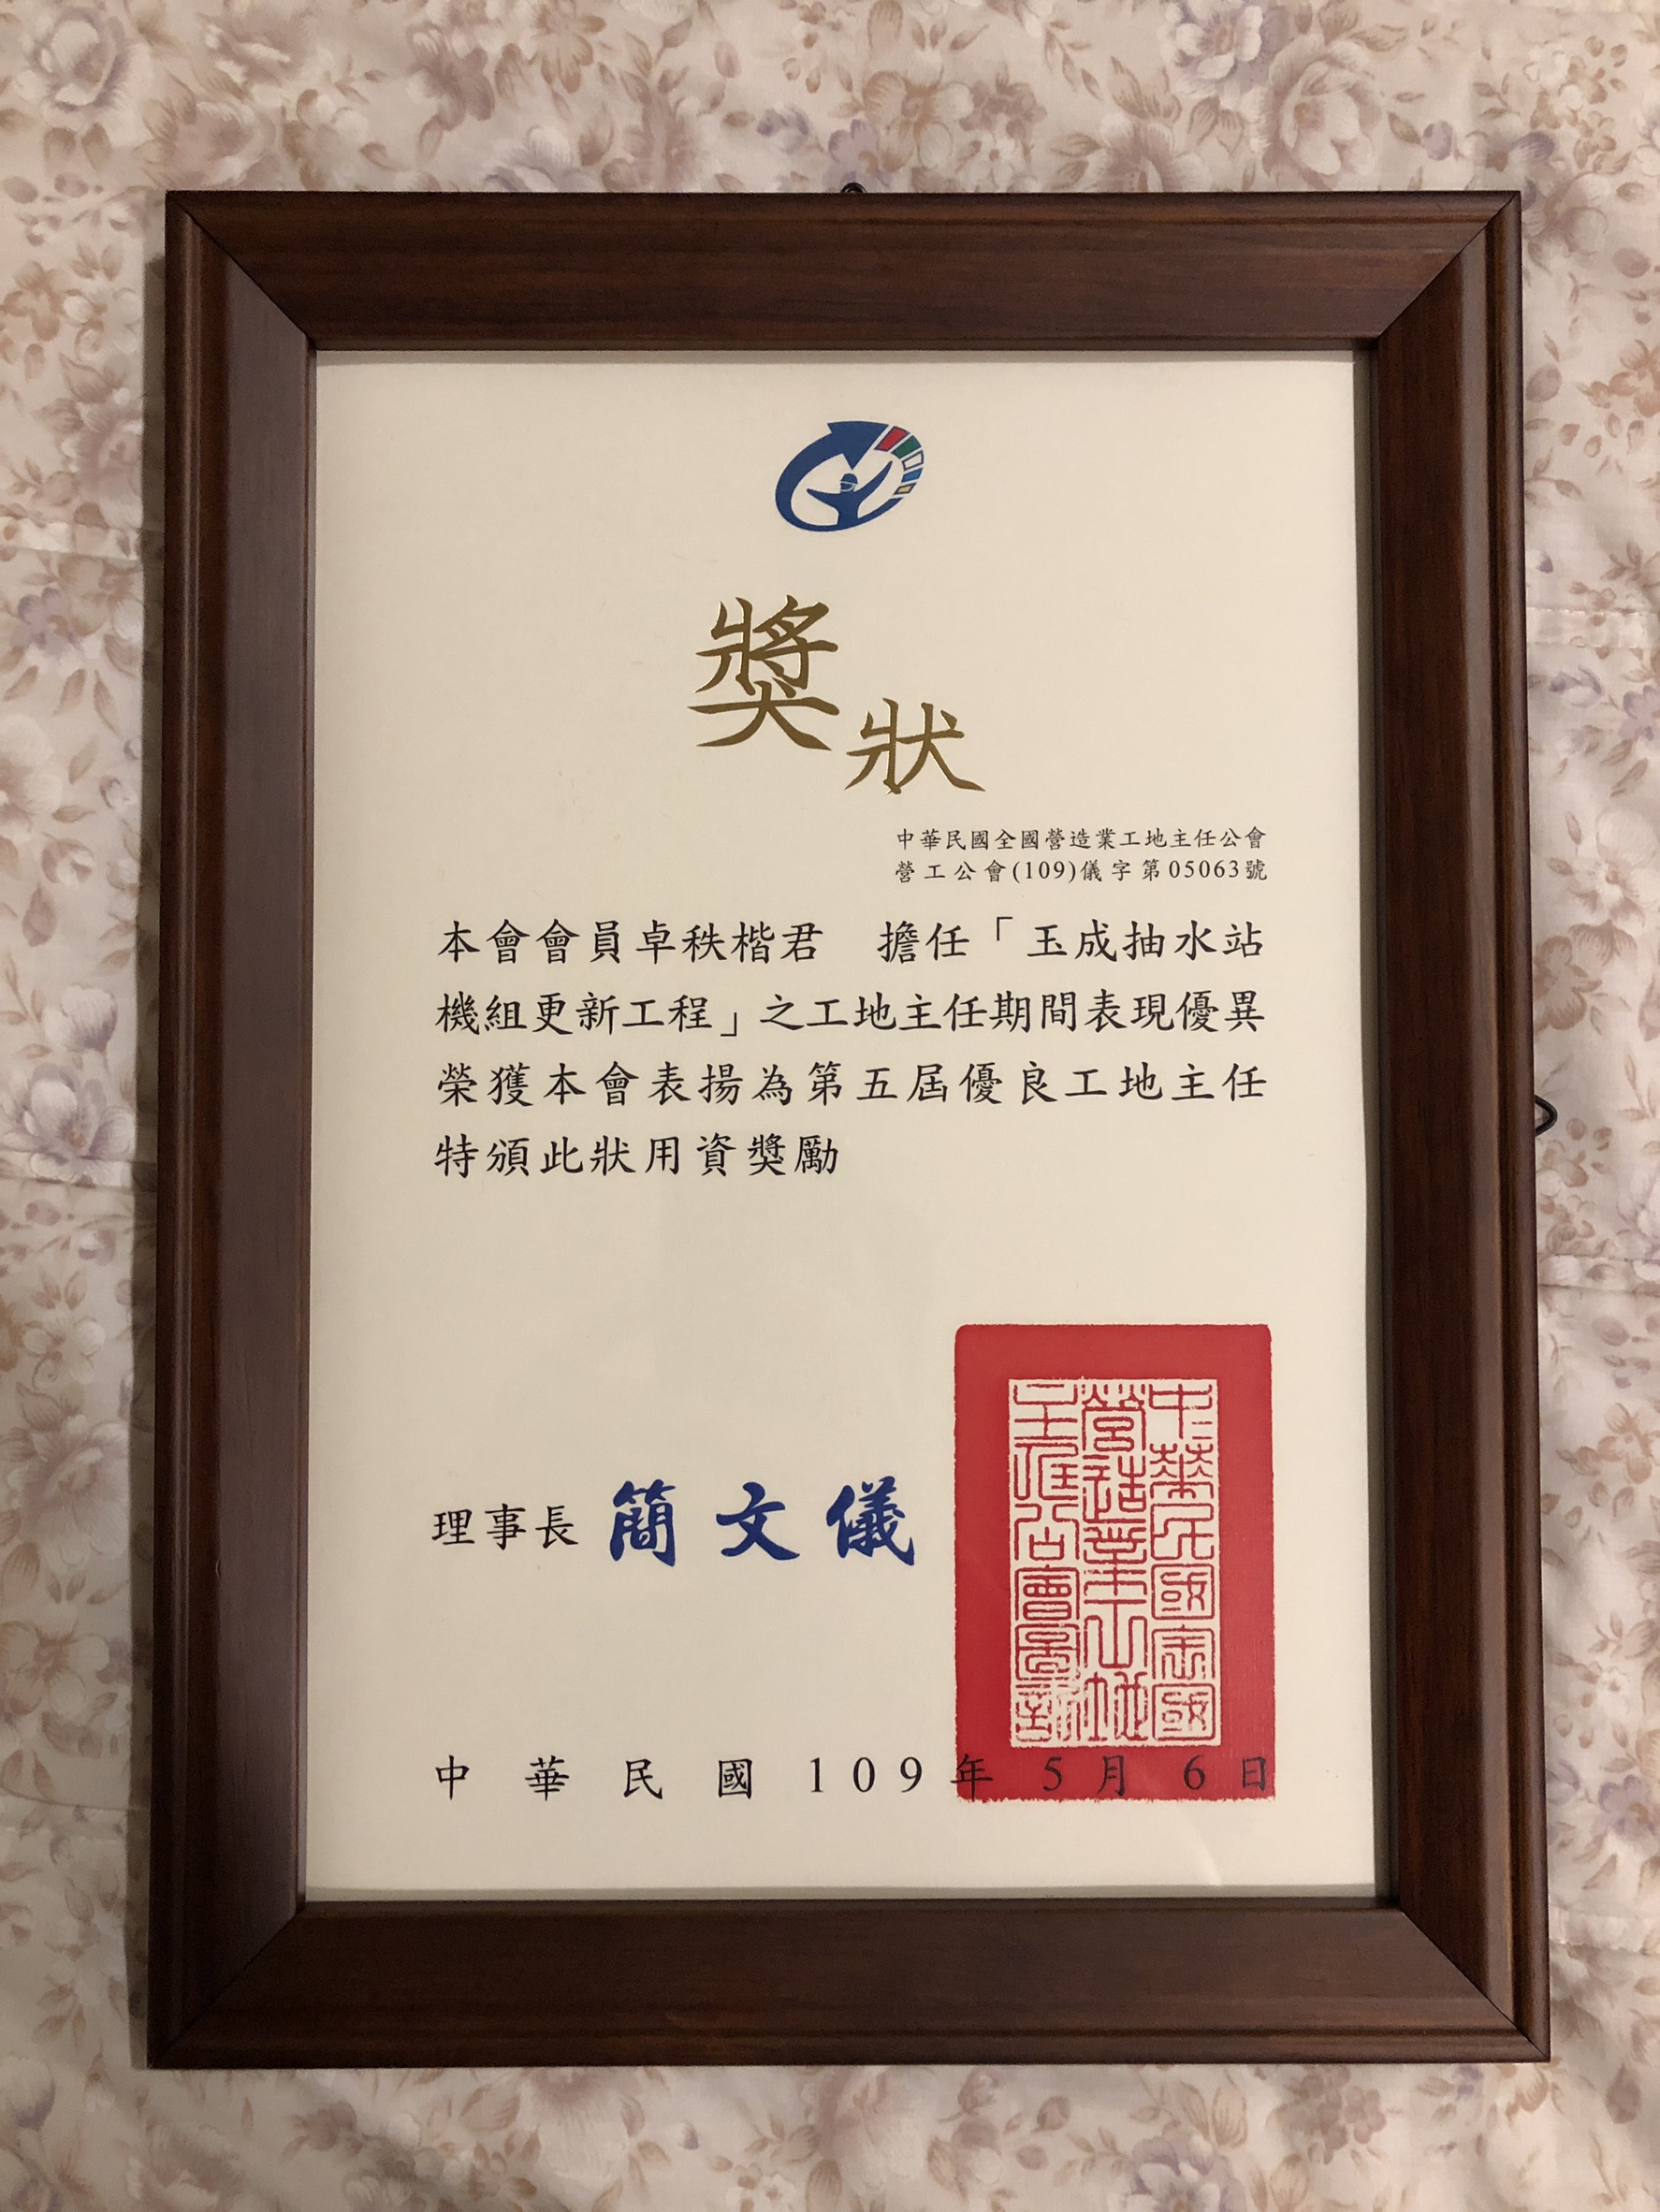 中鋼機械卓秩楷工程師榮獲中華民國全國營造業工地主任公會表揚為第五屆優良工地主任